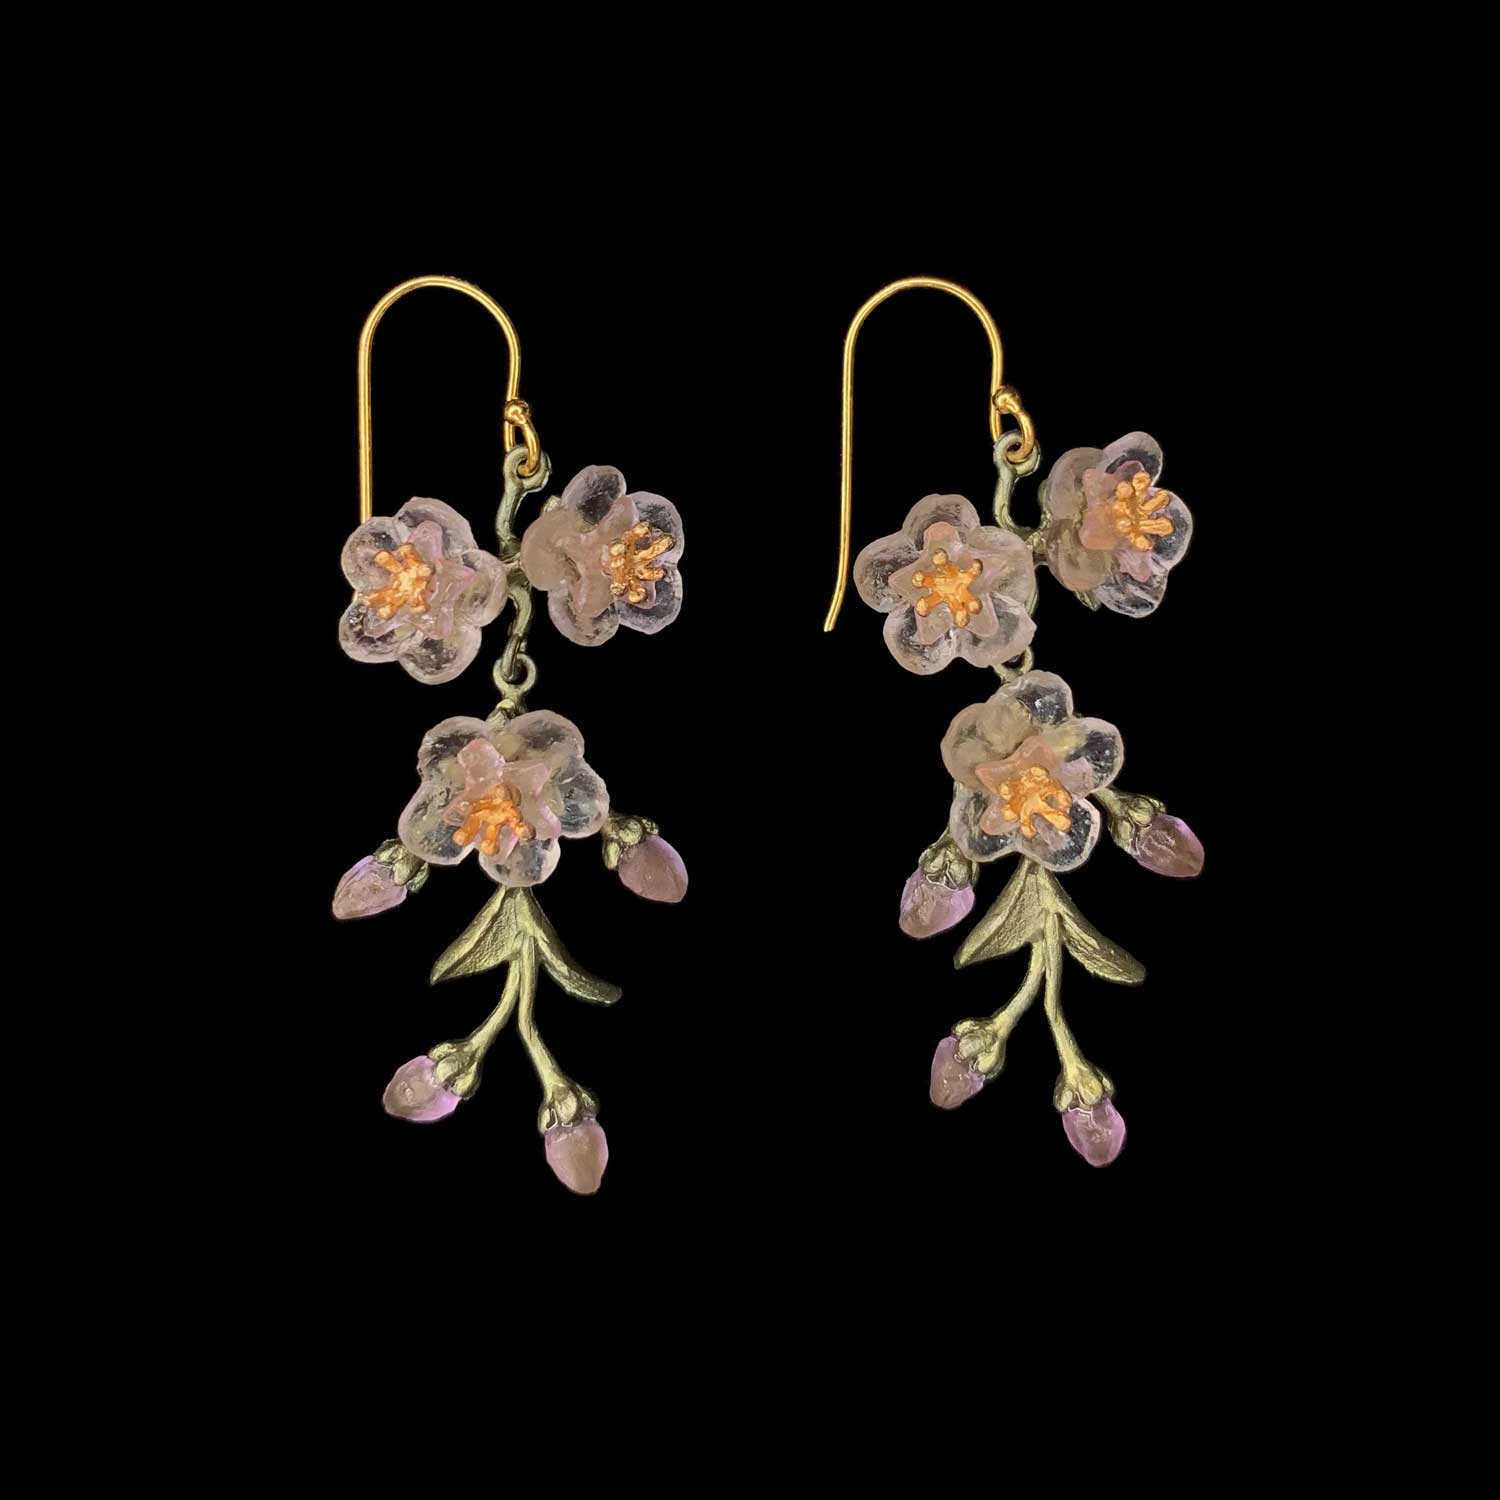 Pfirsichblüte Ohrhänger - Drei Blumen